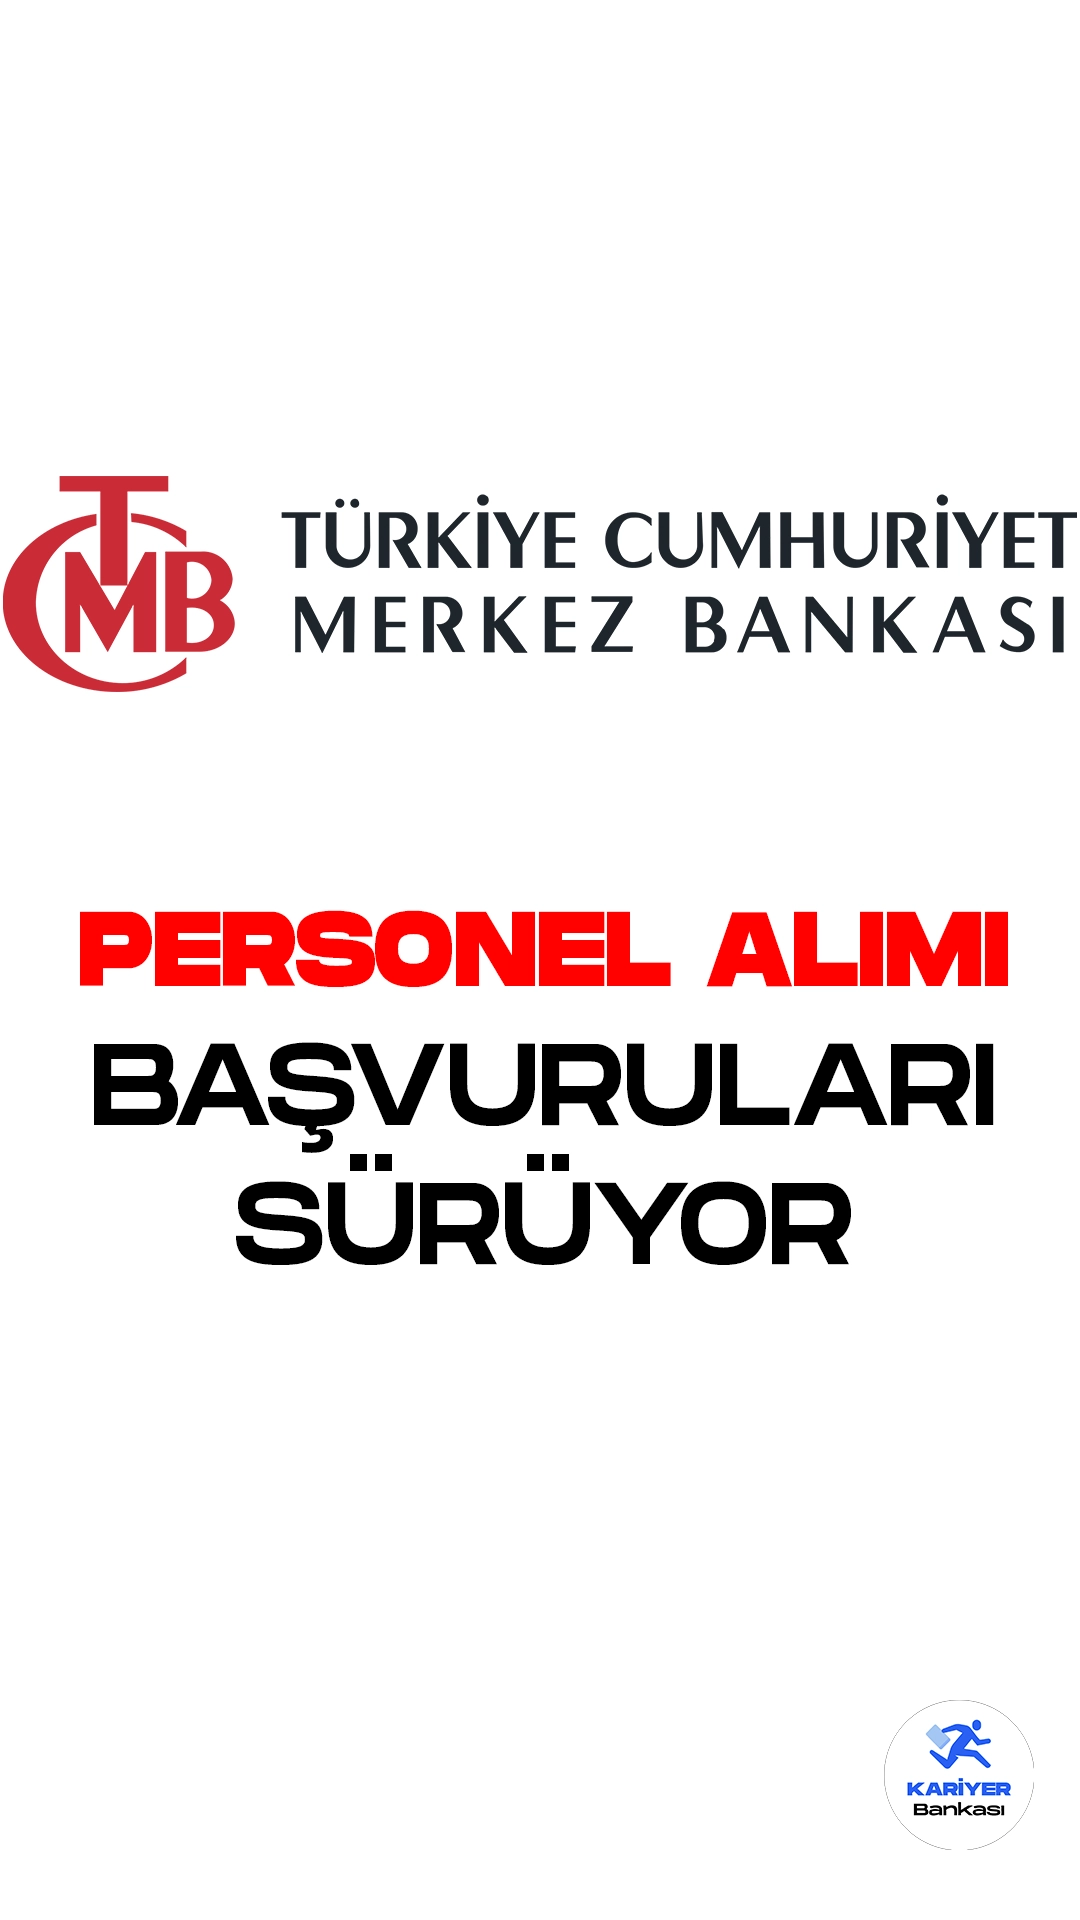 Merkez Bankası personel alımı başvuruları sürüyor. Türkiye Cumhuriyet Merkez Bankası resmi sayfasından yayımlanan duyuruya göre, Merkez Bankasına mühendis ve teknisyen ünvanlarında kadrolu ve sözleşmeli olmak üzere personel alımları yapılacak. Başvuruların 4 Ağustos itibarıyla başladığı aktarılırken, işlemlerin 21 Ağustos 2023 tarihinde sona ereceği kaydedildi. Başvuru yapacak adayların belirtilen genel ve özel şartları dikkatle incelemesi gerekmektedir.